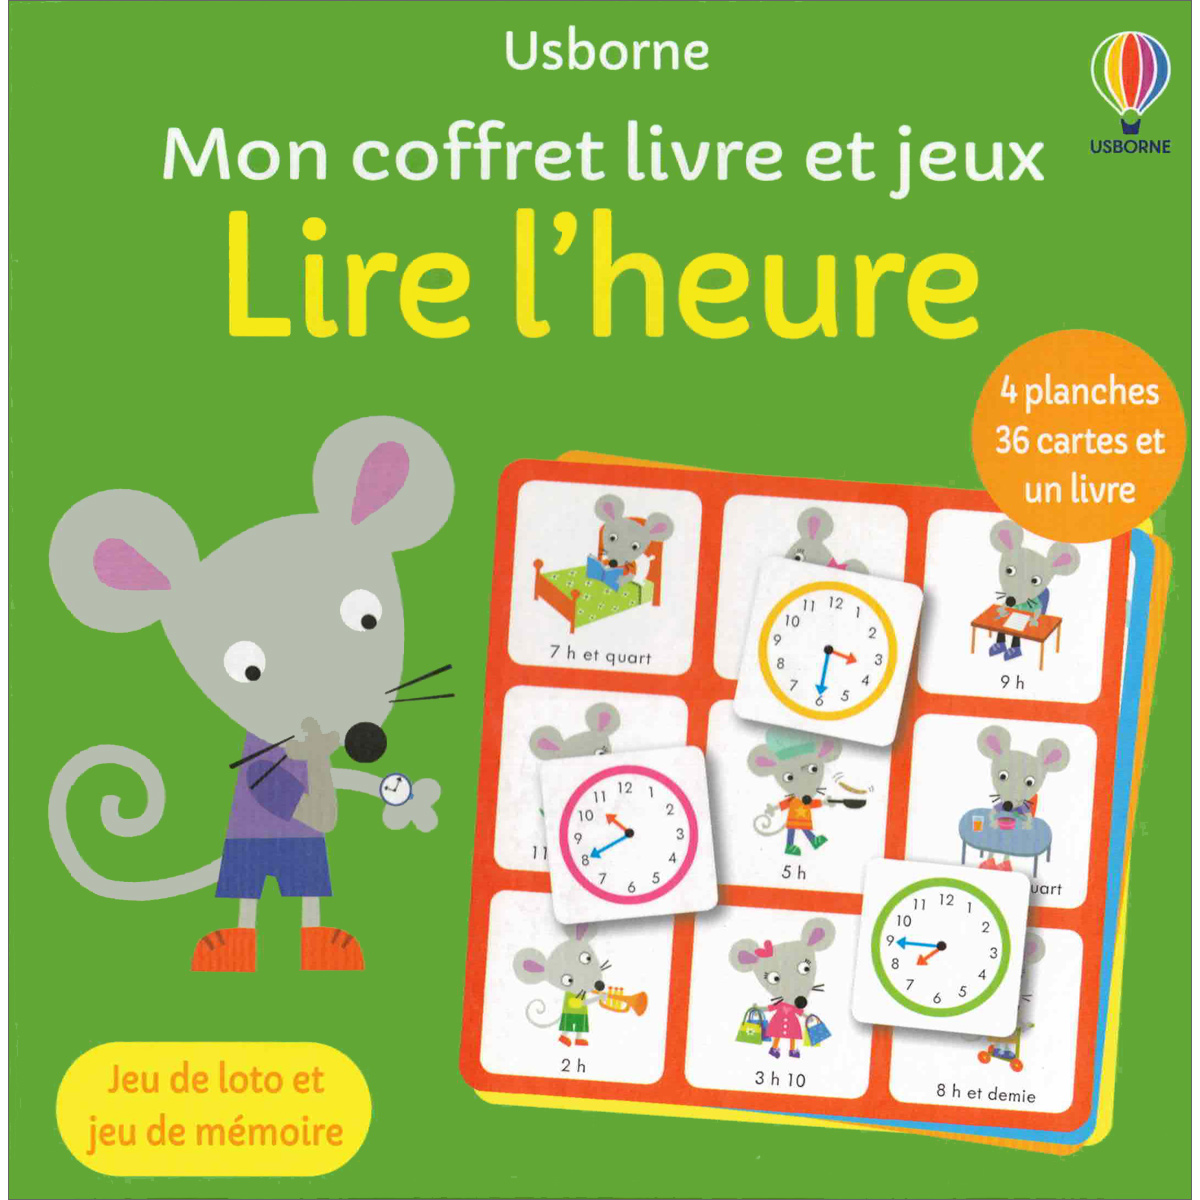 Usborne Mon coffret livre et jeux: Lire l'heure - Little Linguist